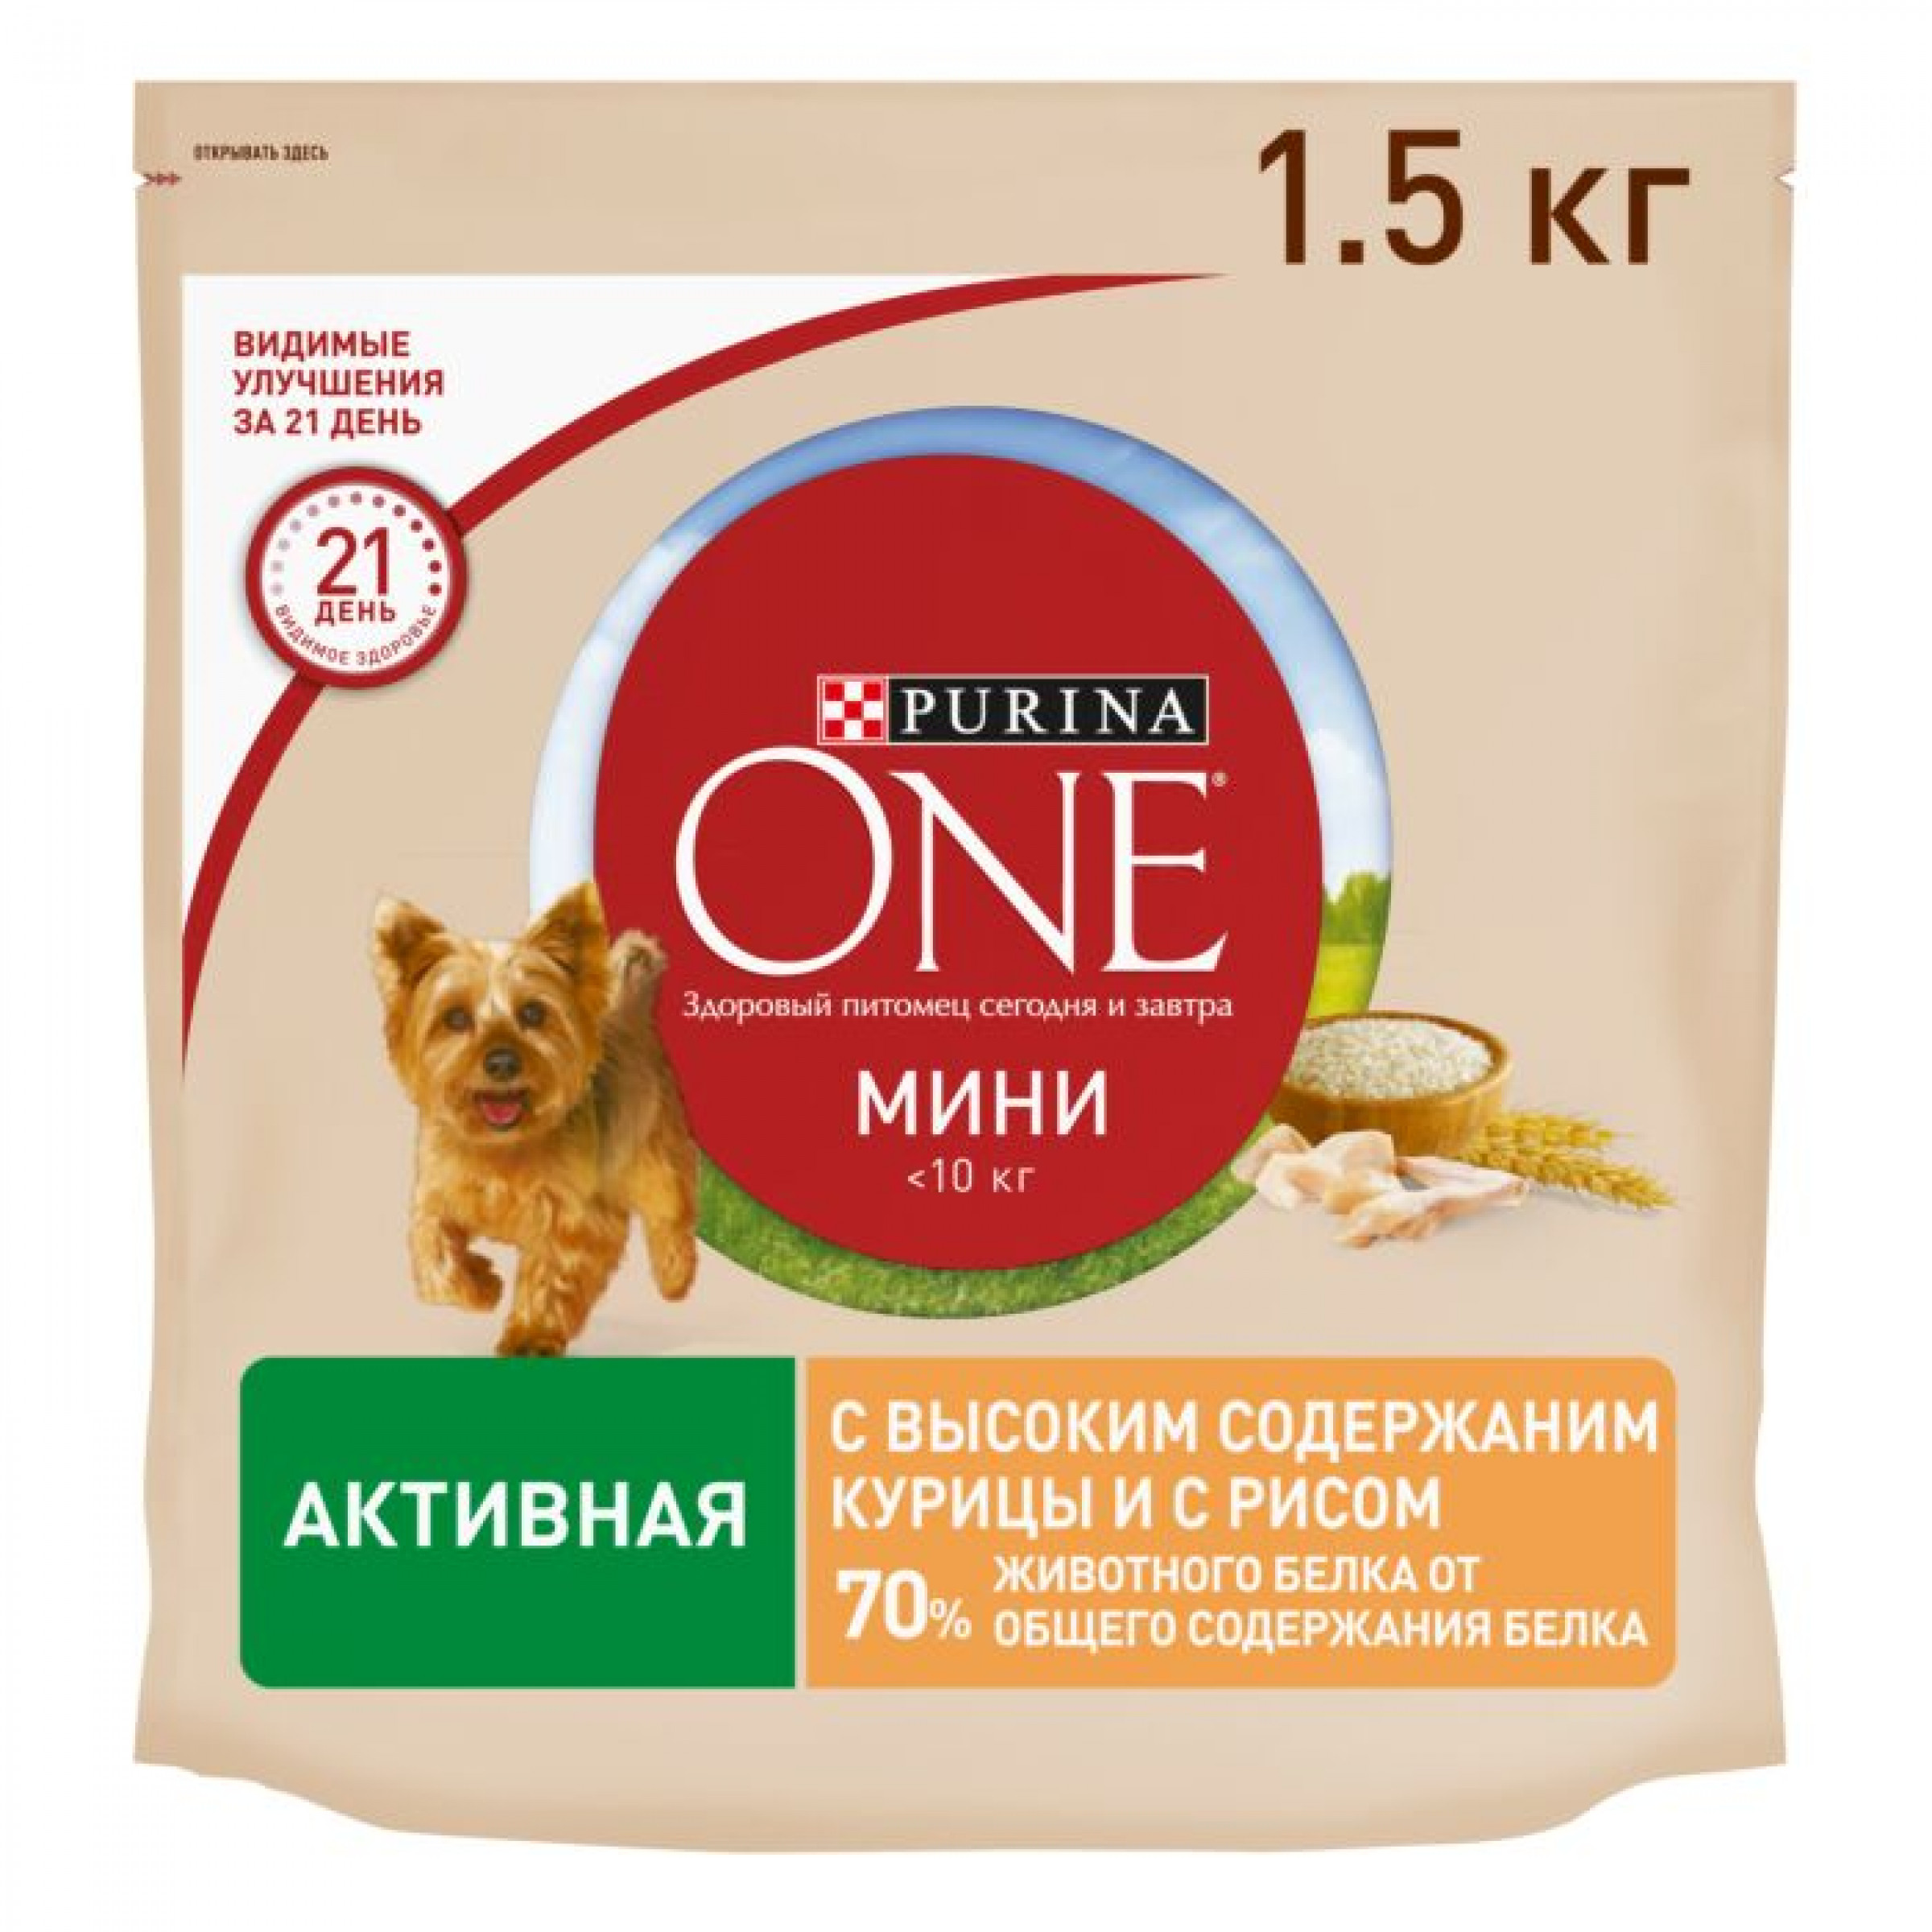 Сухой корм Purina ONE® МИНИ Активная для собак мелких пород, с высоким содержанием курицы и с рисом, 1,5 кг